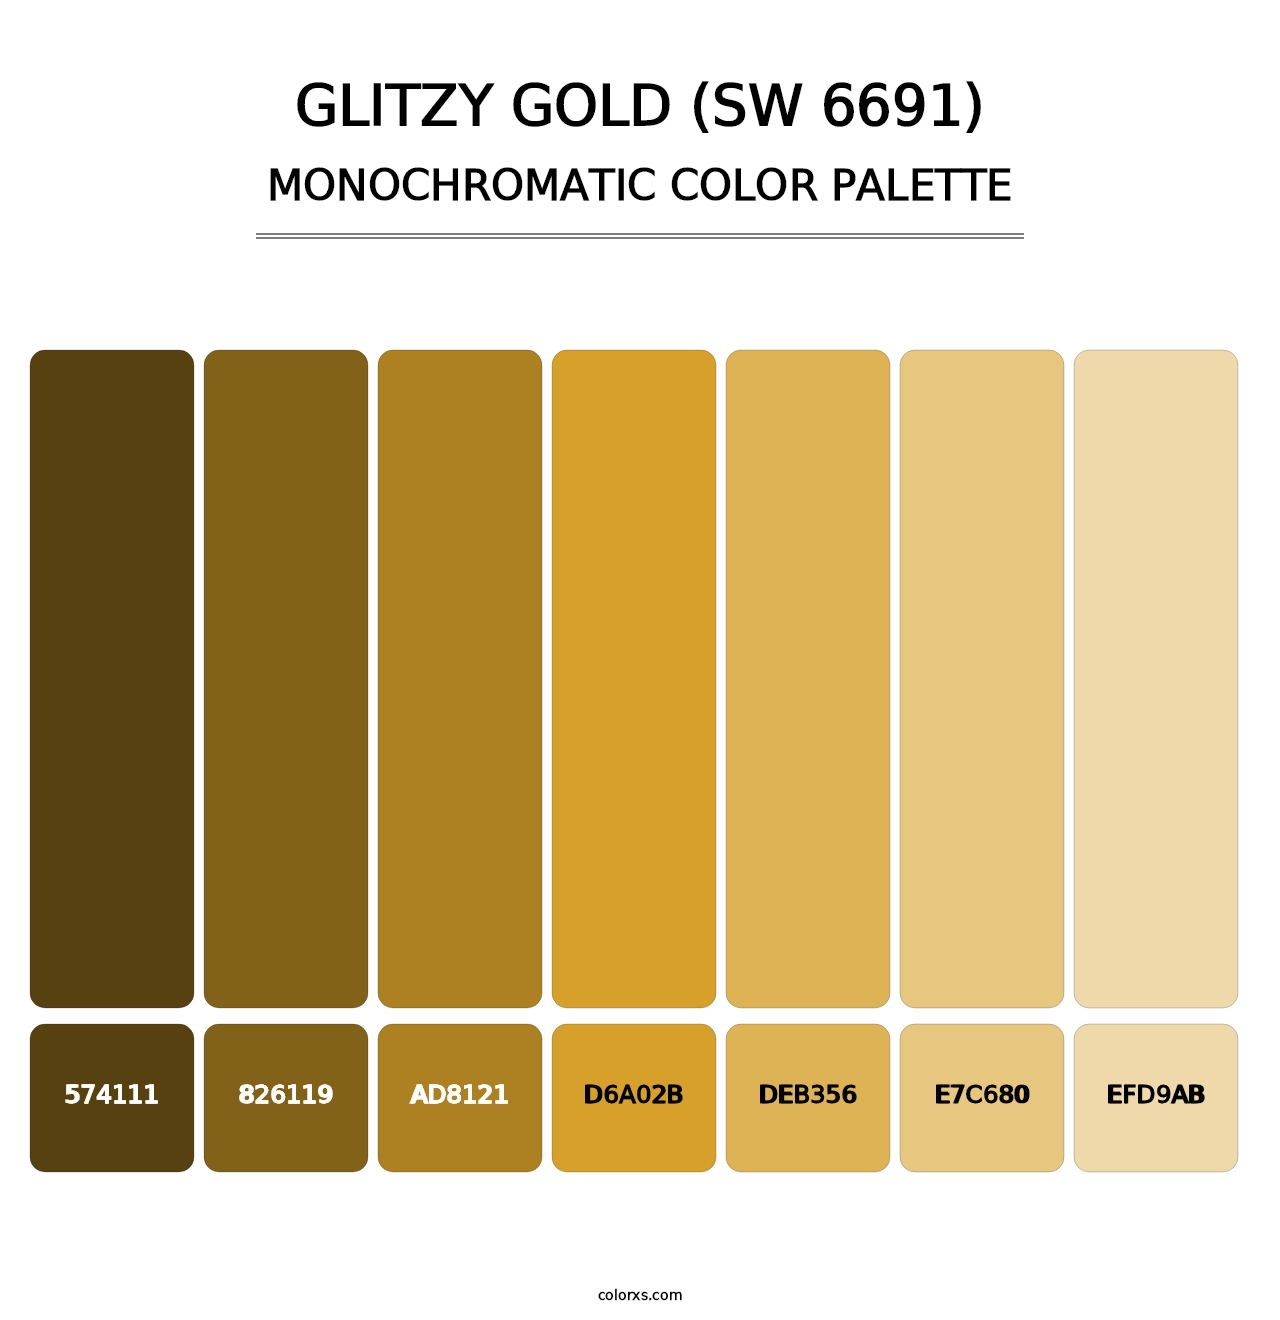 Glitzy Gold (SW 6691) - Monochromatic Color Palette